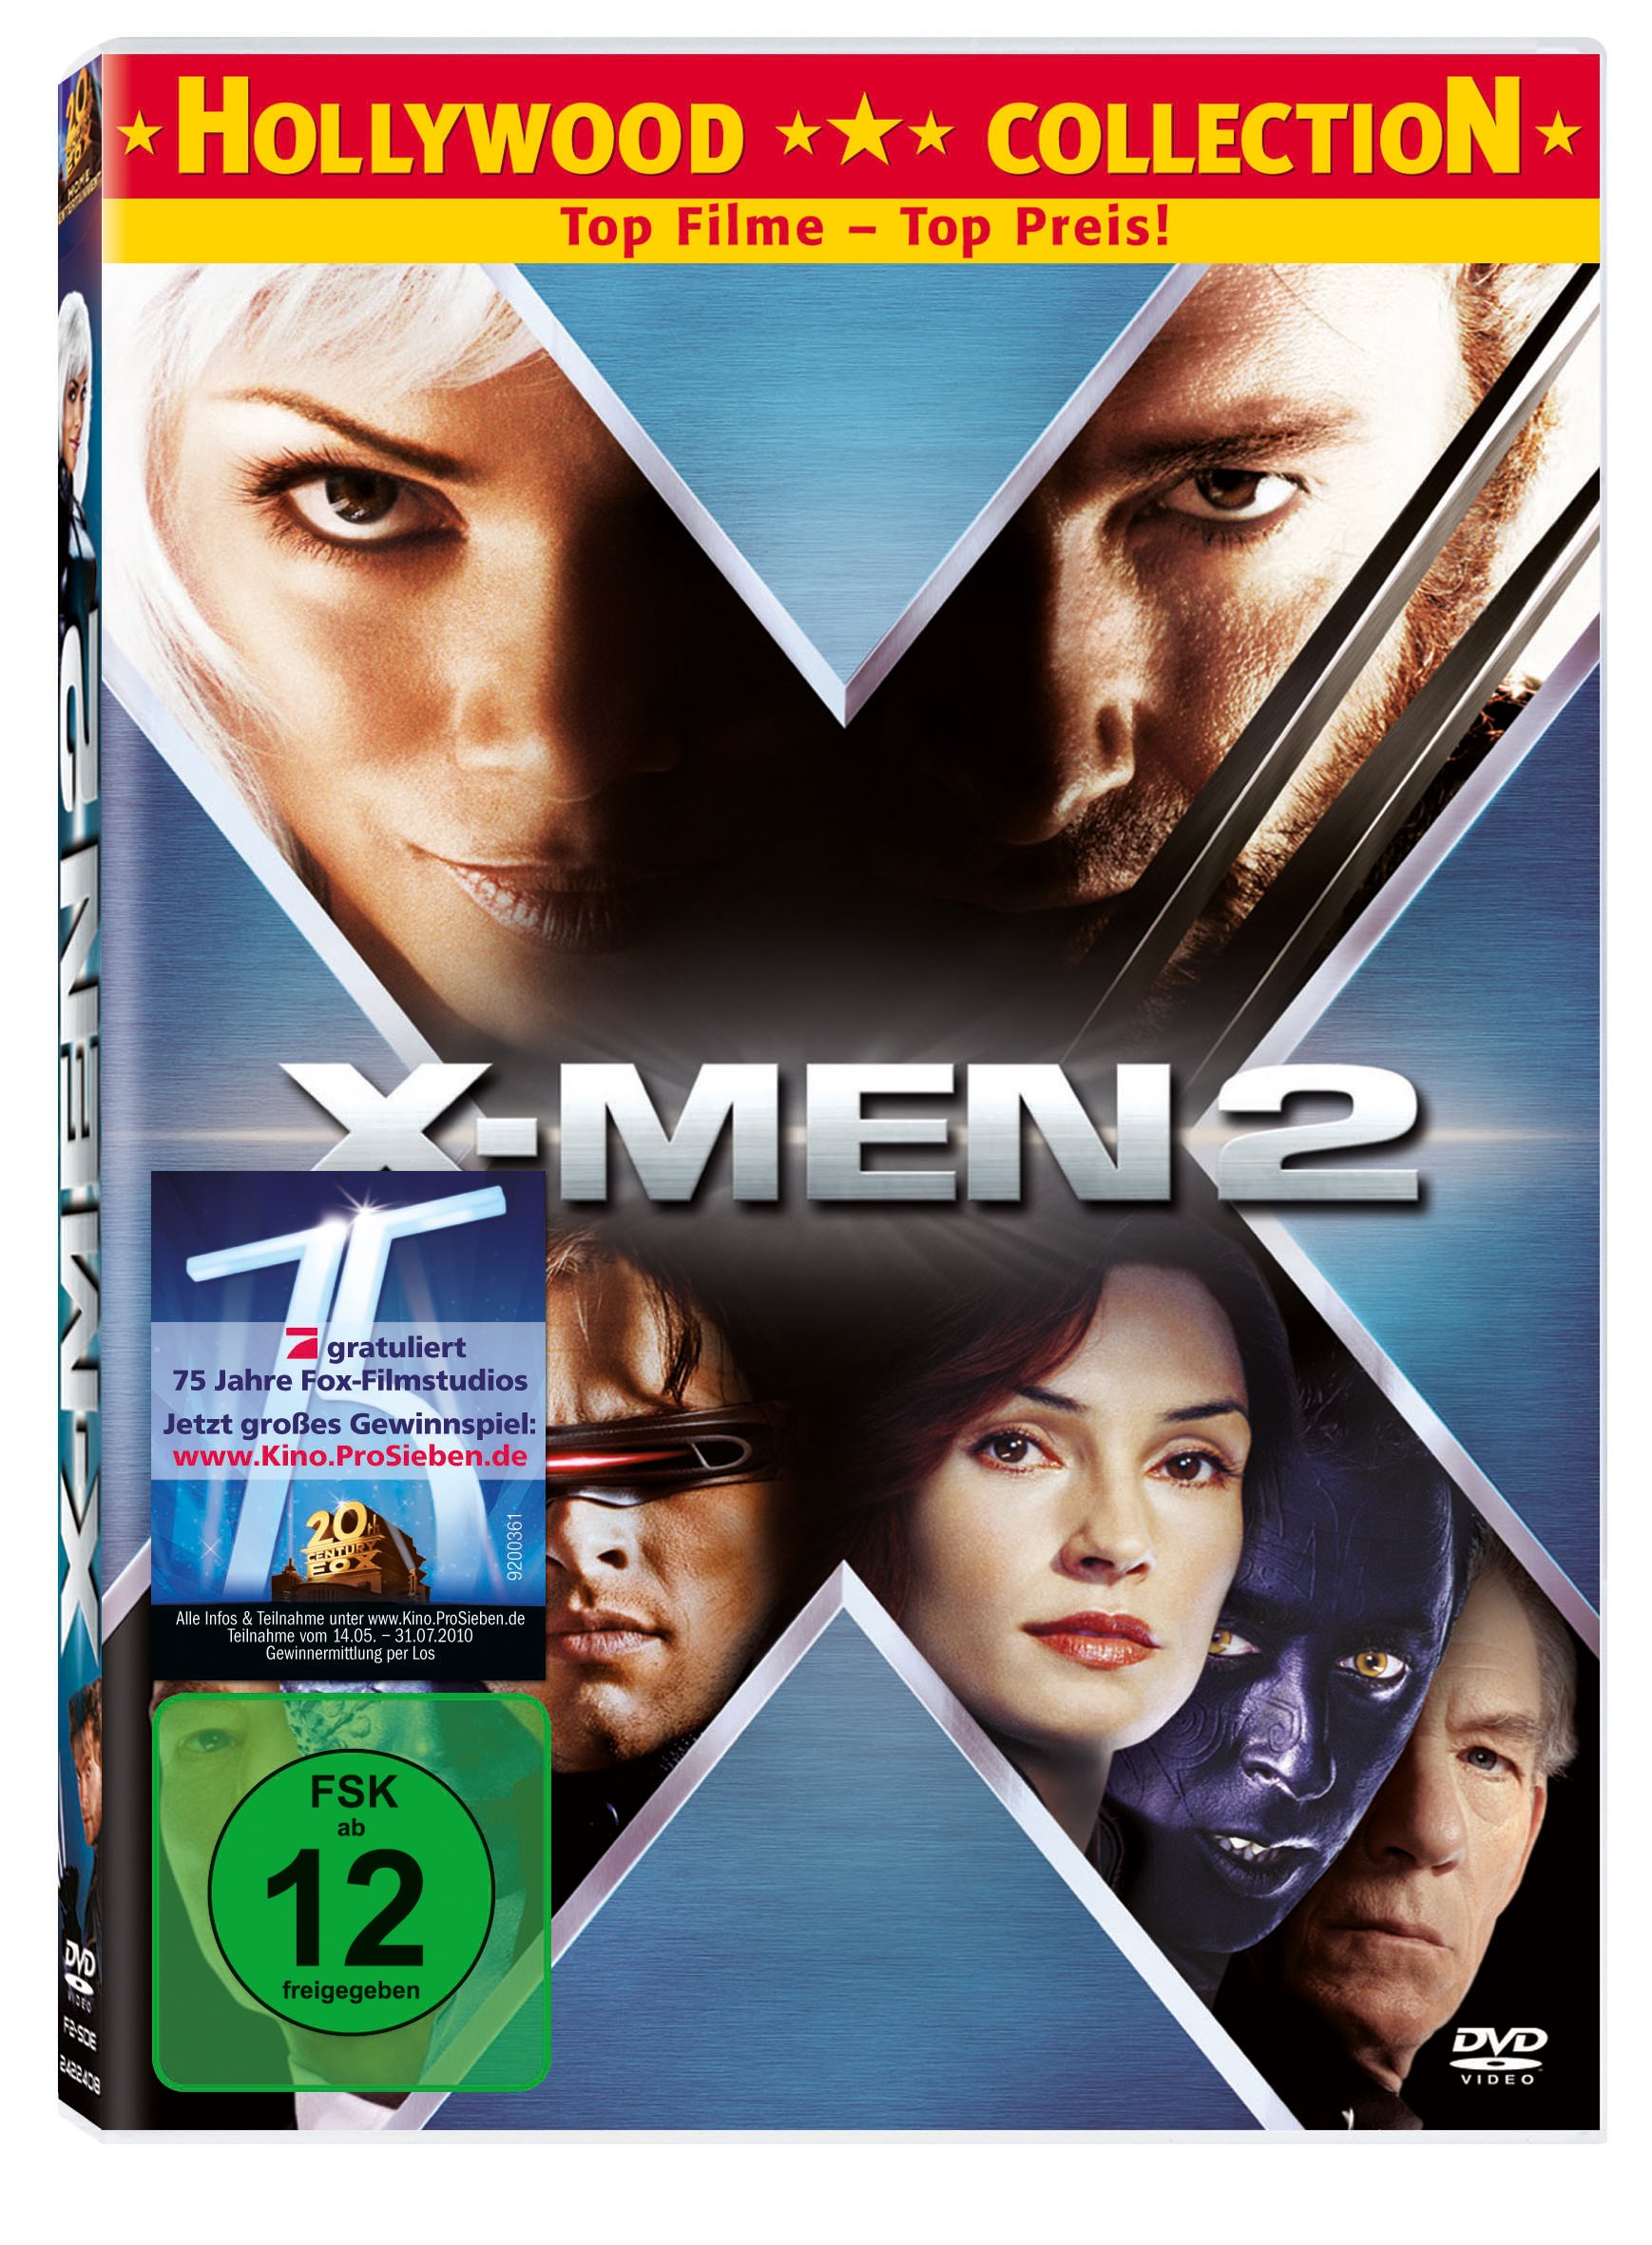 X-Men 2  Standard Version - Hugh Jackman Sir Patrick Stewart  und  Sir Ian McKellen